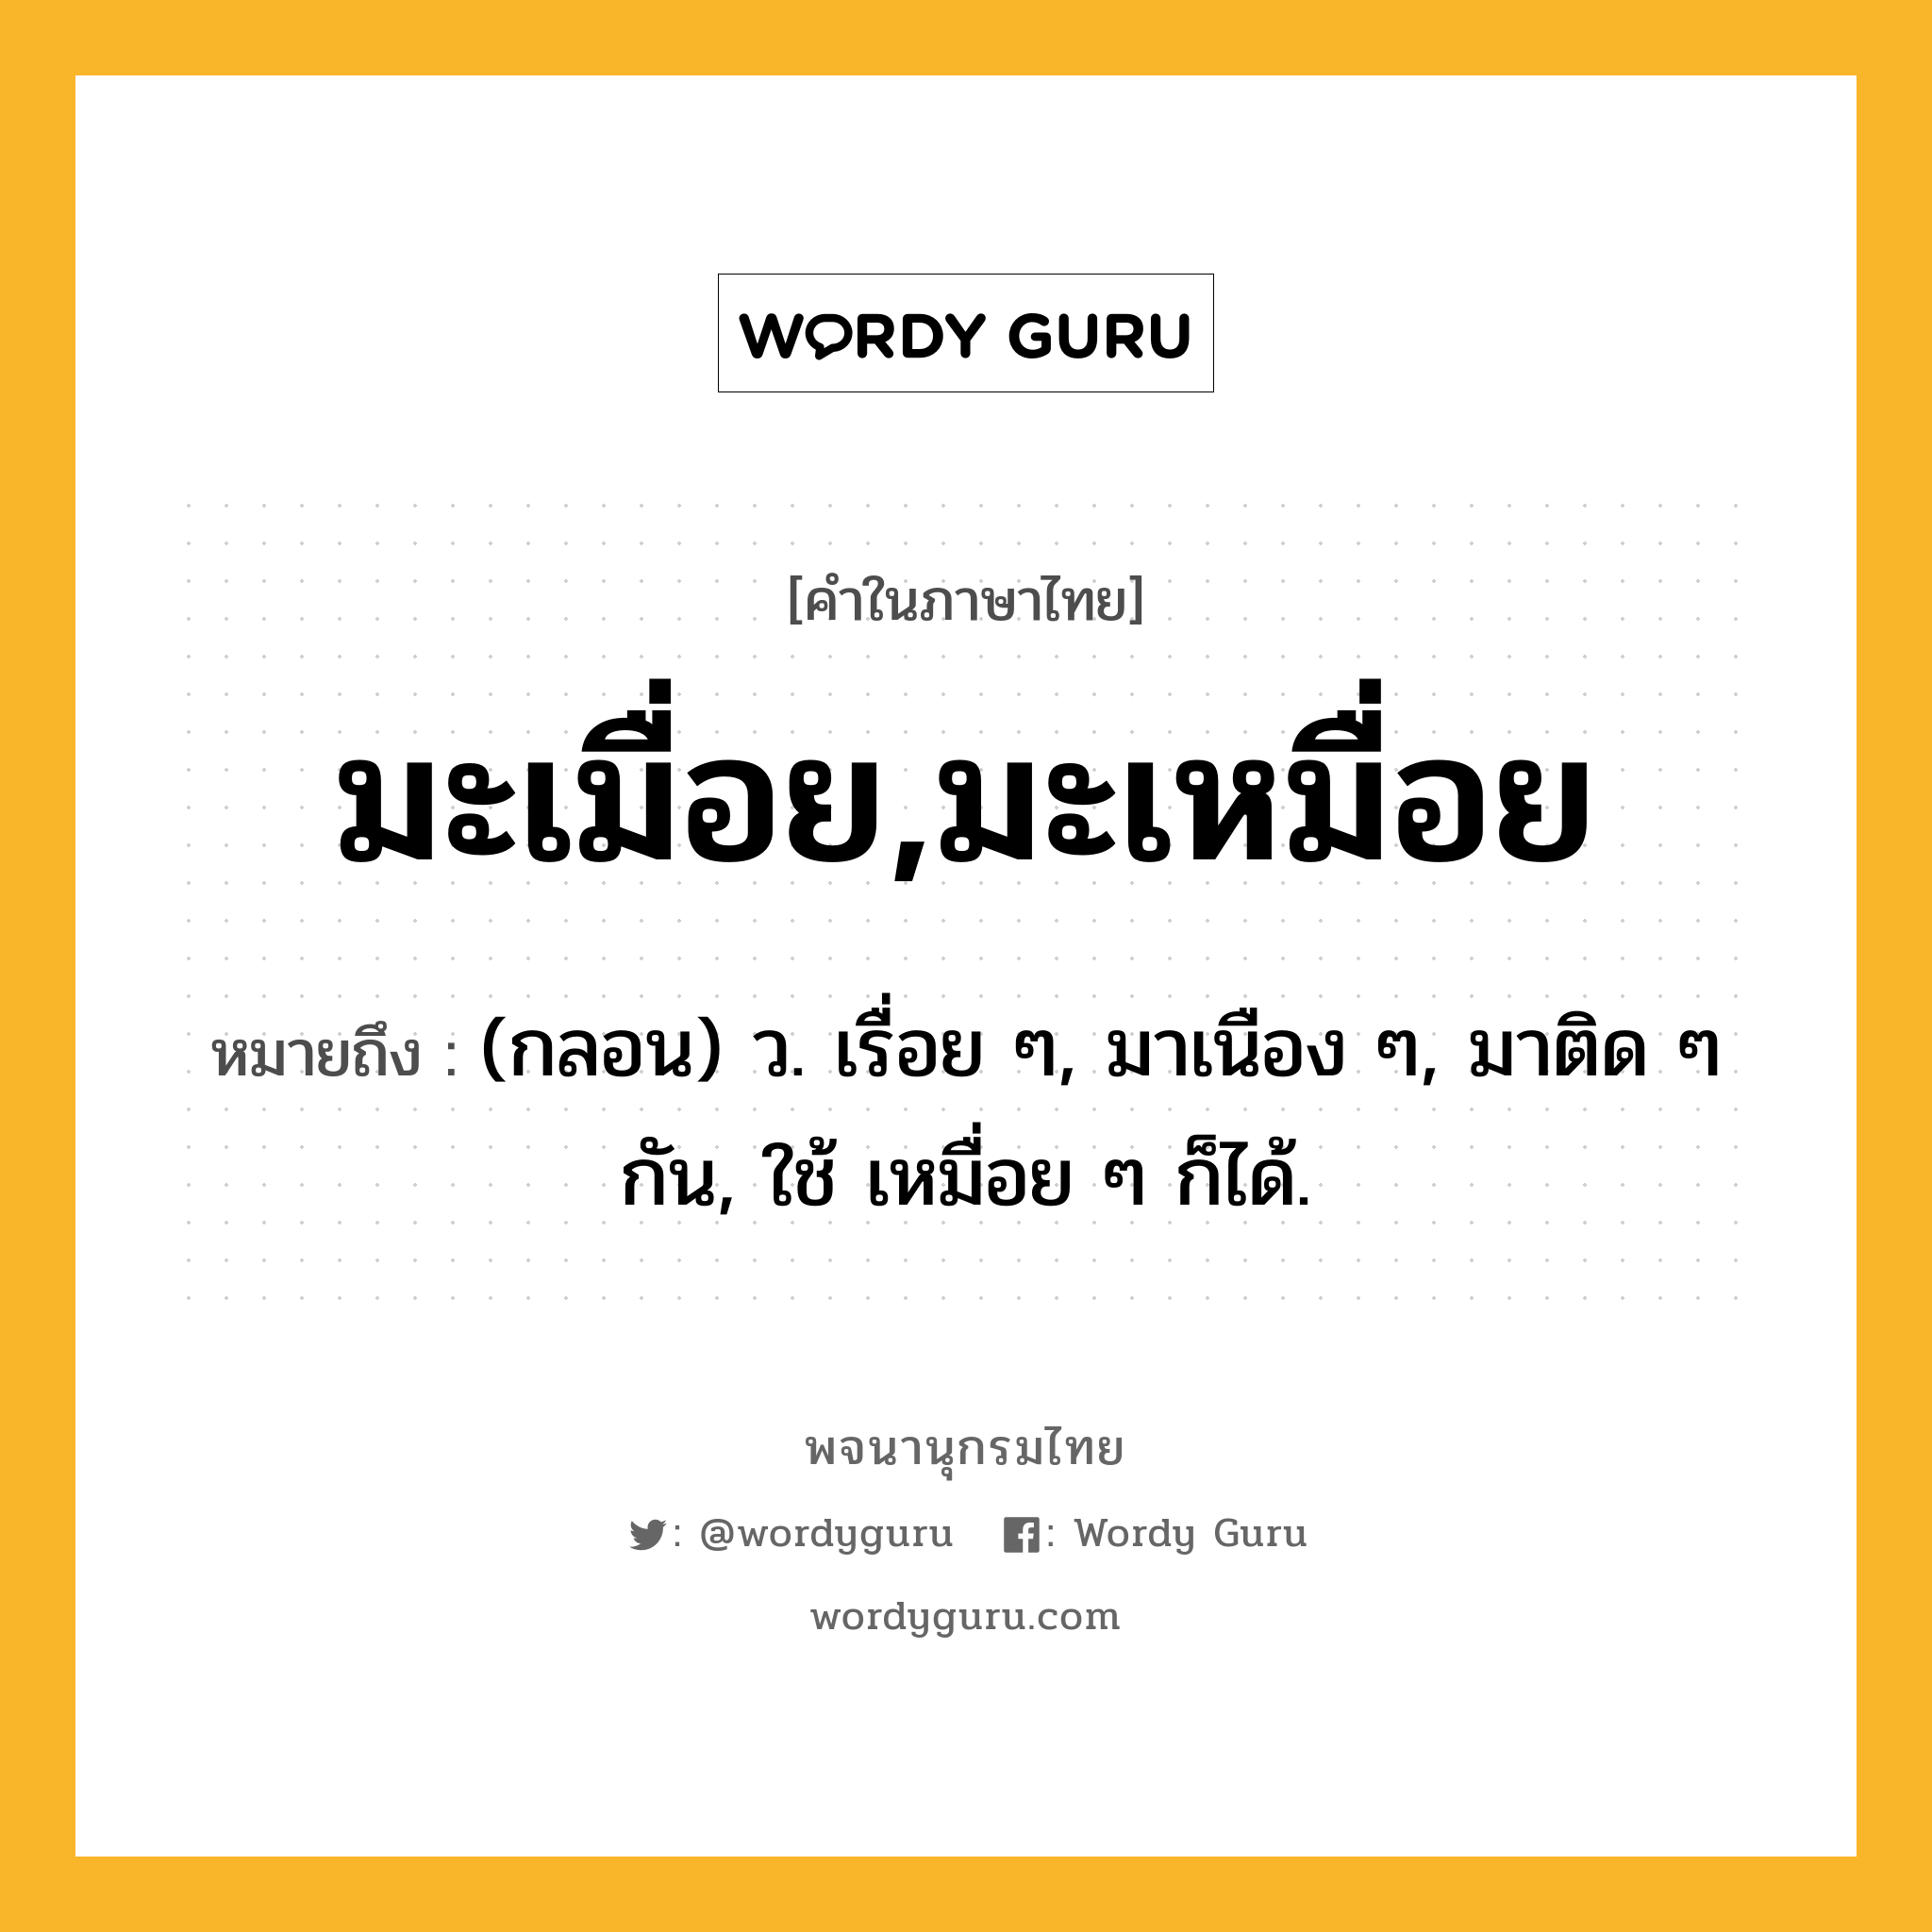 มะเมื่อย,มะเหมื่อย หมายถึงอะไร?, คำในภาษาไทย มะเมื่อย,มะเหมื่อย หมายถึง (กลอน) ว. เรื่อย ๆ, มาเนือง ๆ, มาติด ๆ กัน, ใช้ เหมื่อย ๆ ก็ได้.